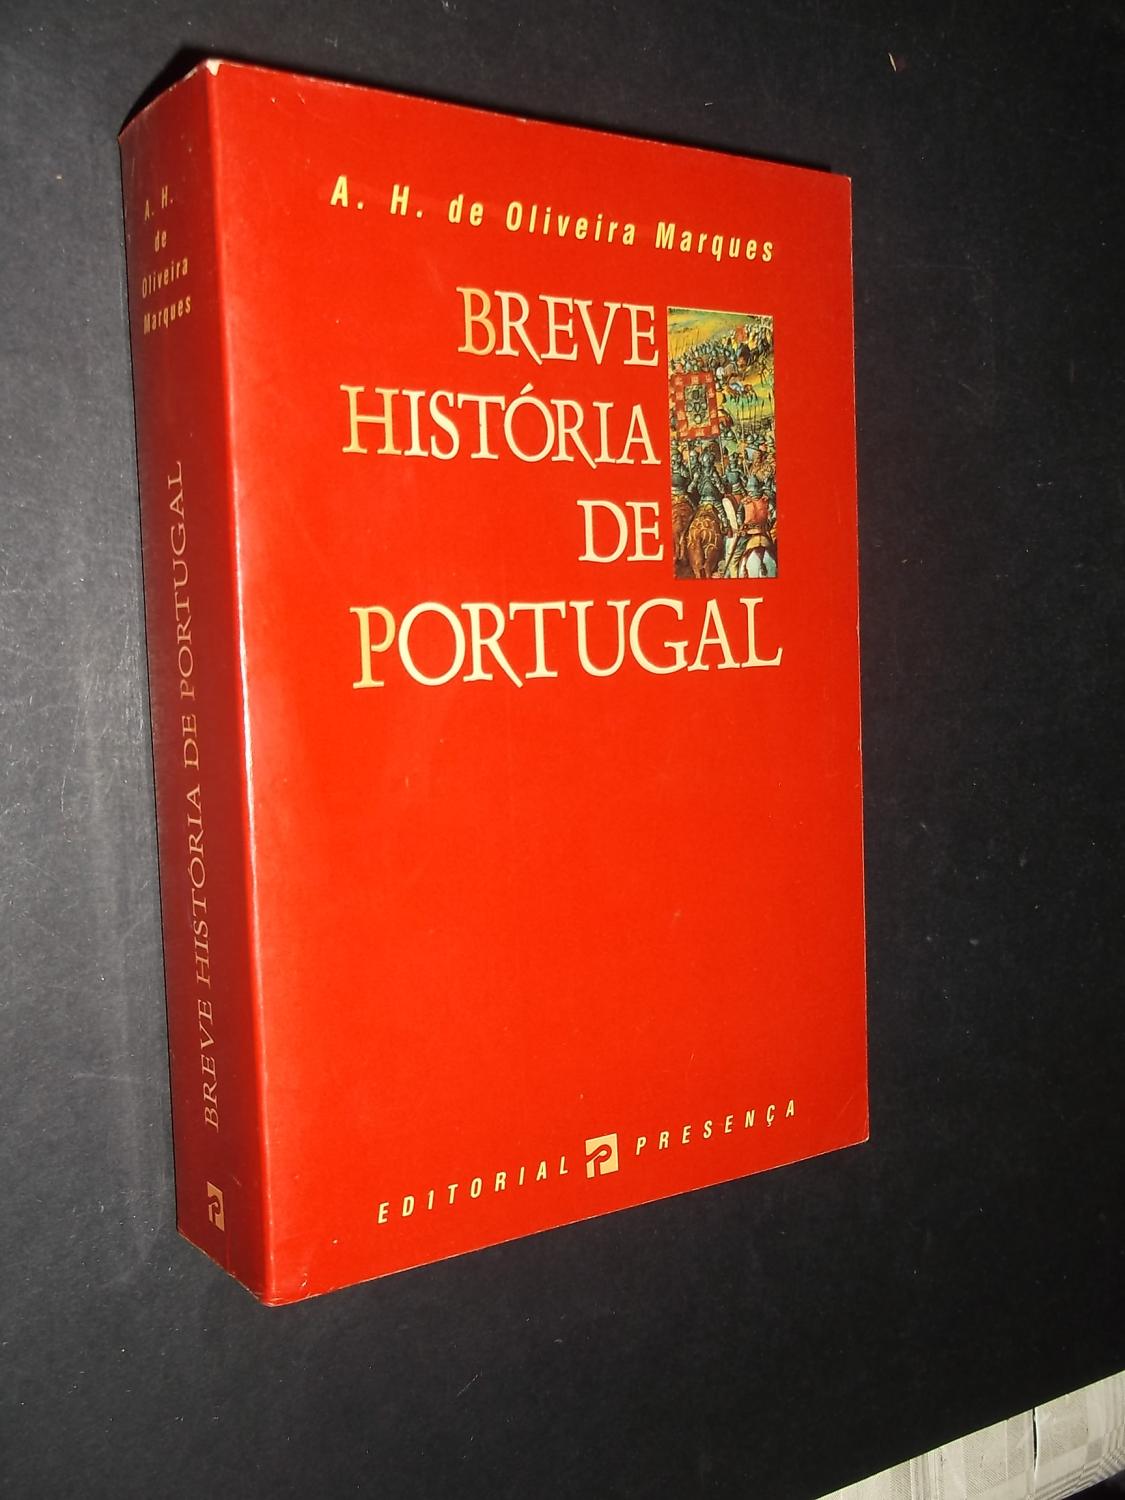 Breve História de Portugal - Marques (A.H. de Oliveira)